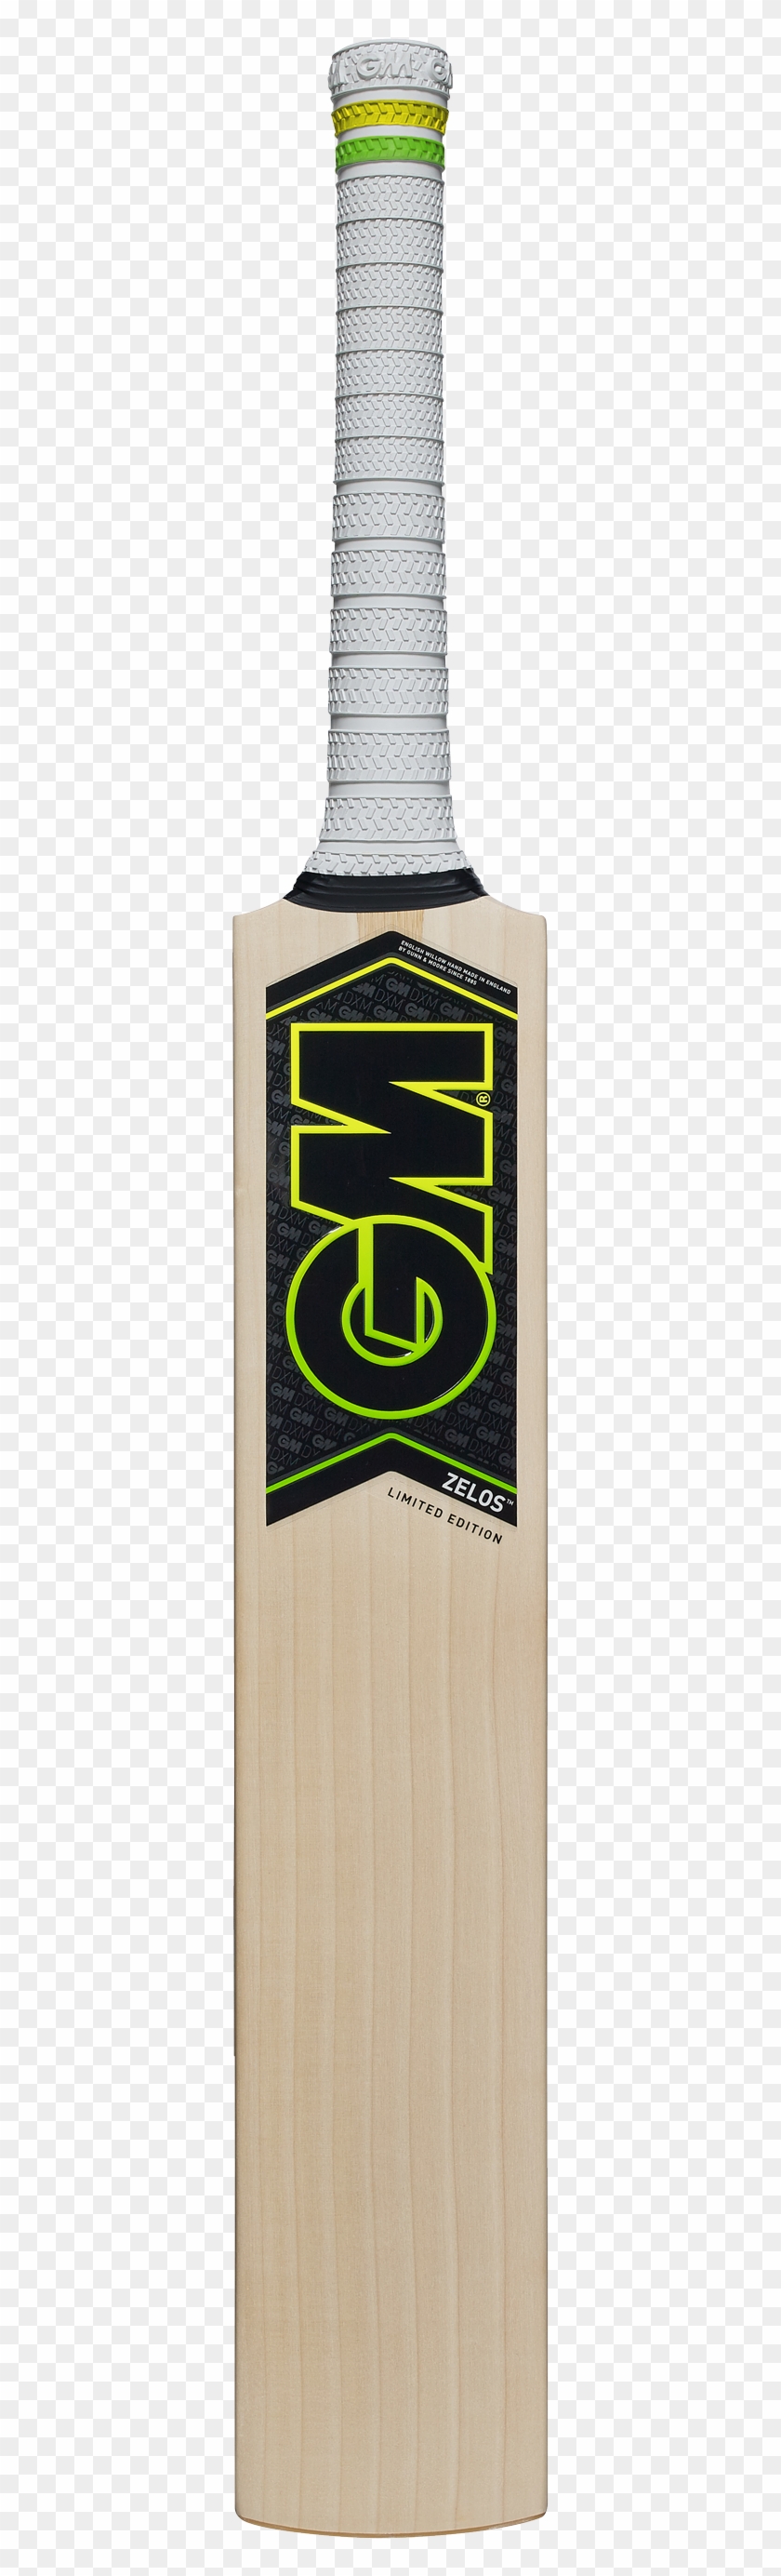 Gm Zelos Cricket Bat - Wood Clipart #825973